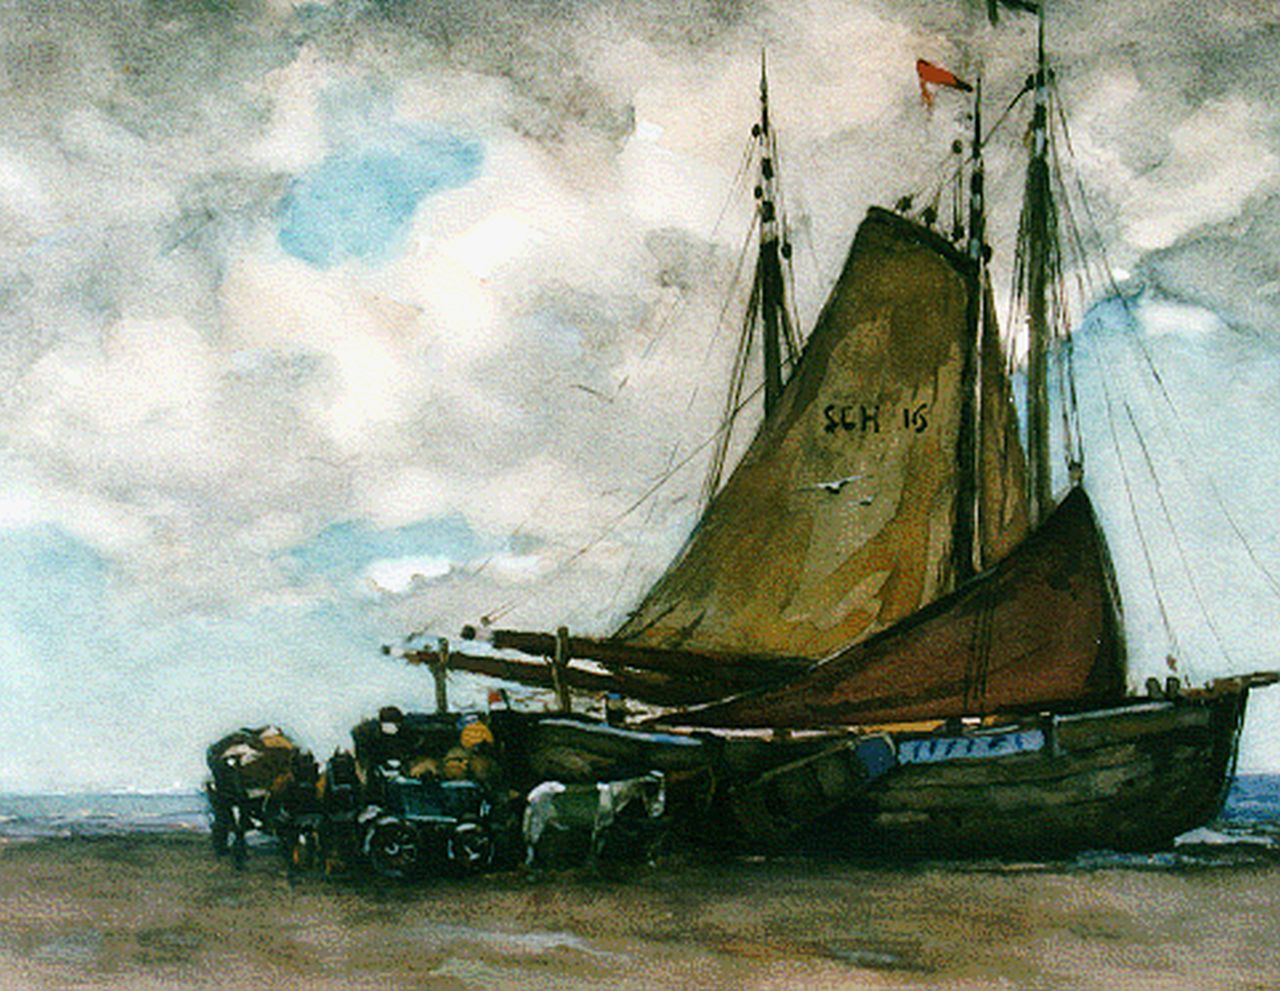 Zwart W.H.P.J. de | Wilhelmus Hendrikus Petrus Johannes 'Willem' de Zwart, Unloading the catch, watercolour on paper 34.6 x 43.8 cm, signed l.r.